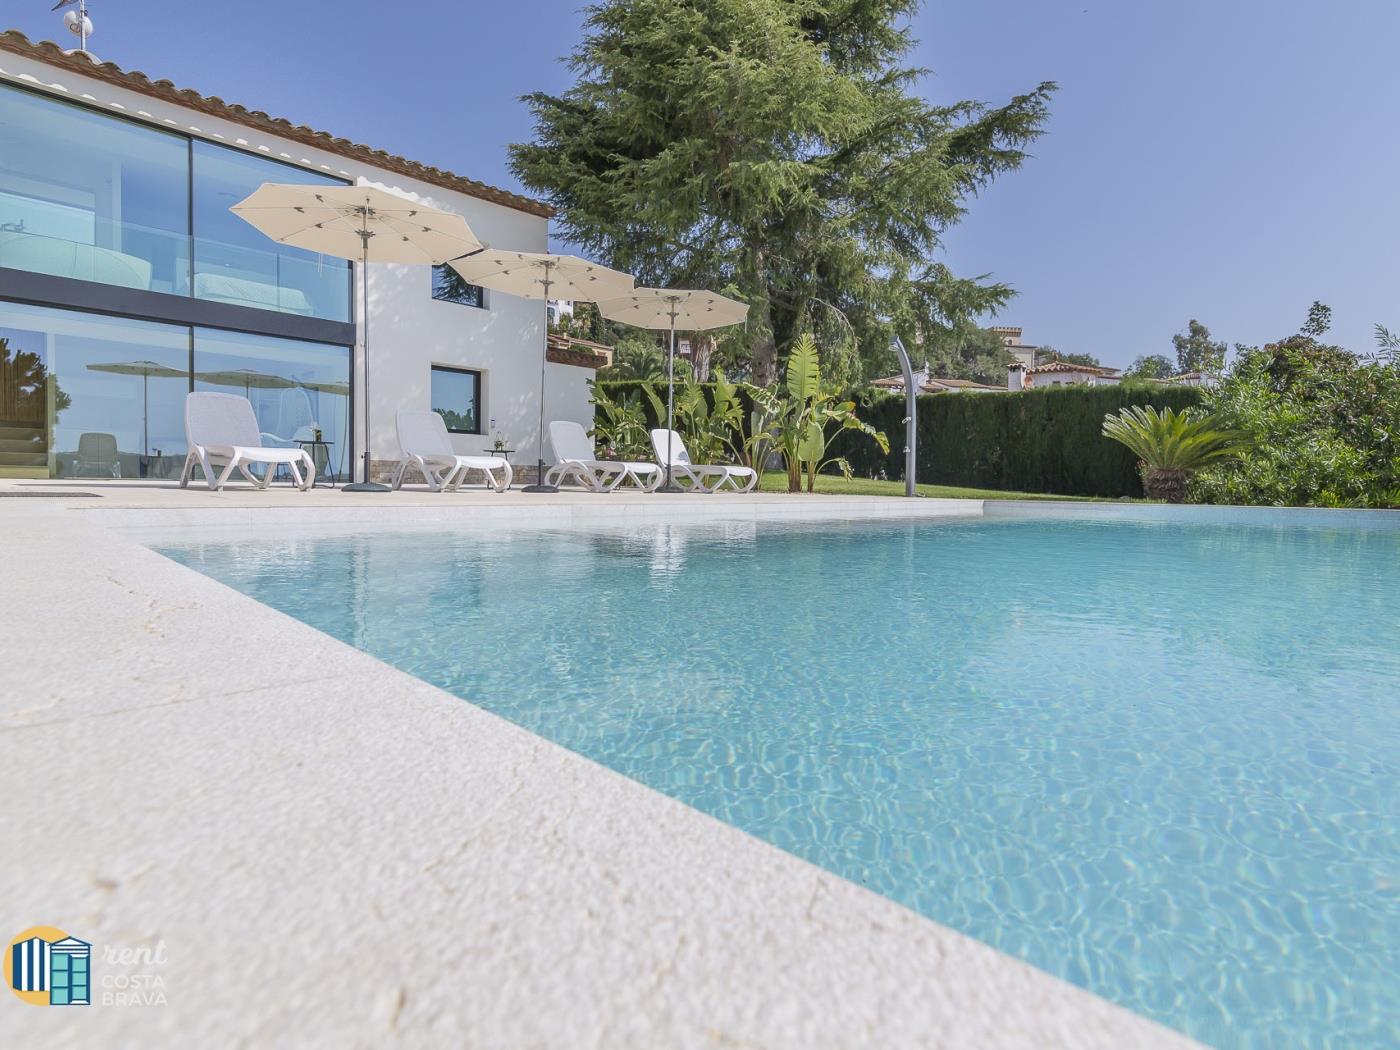 Villa la Dolça con piscina infinita, WIFI gratuito, aire acondicionado. en Calonge